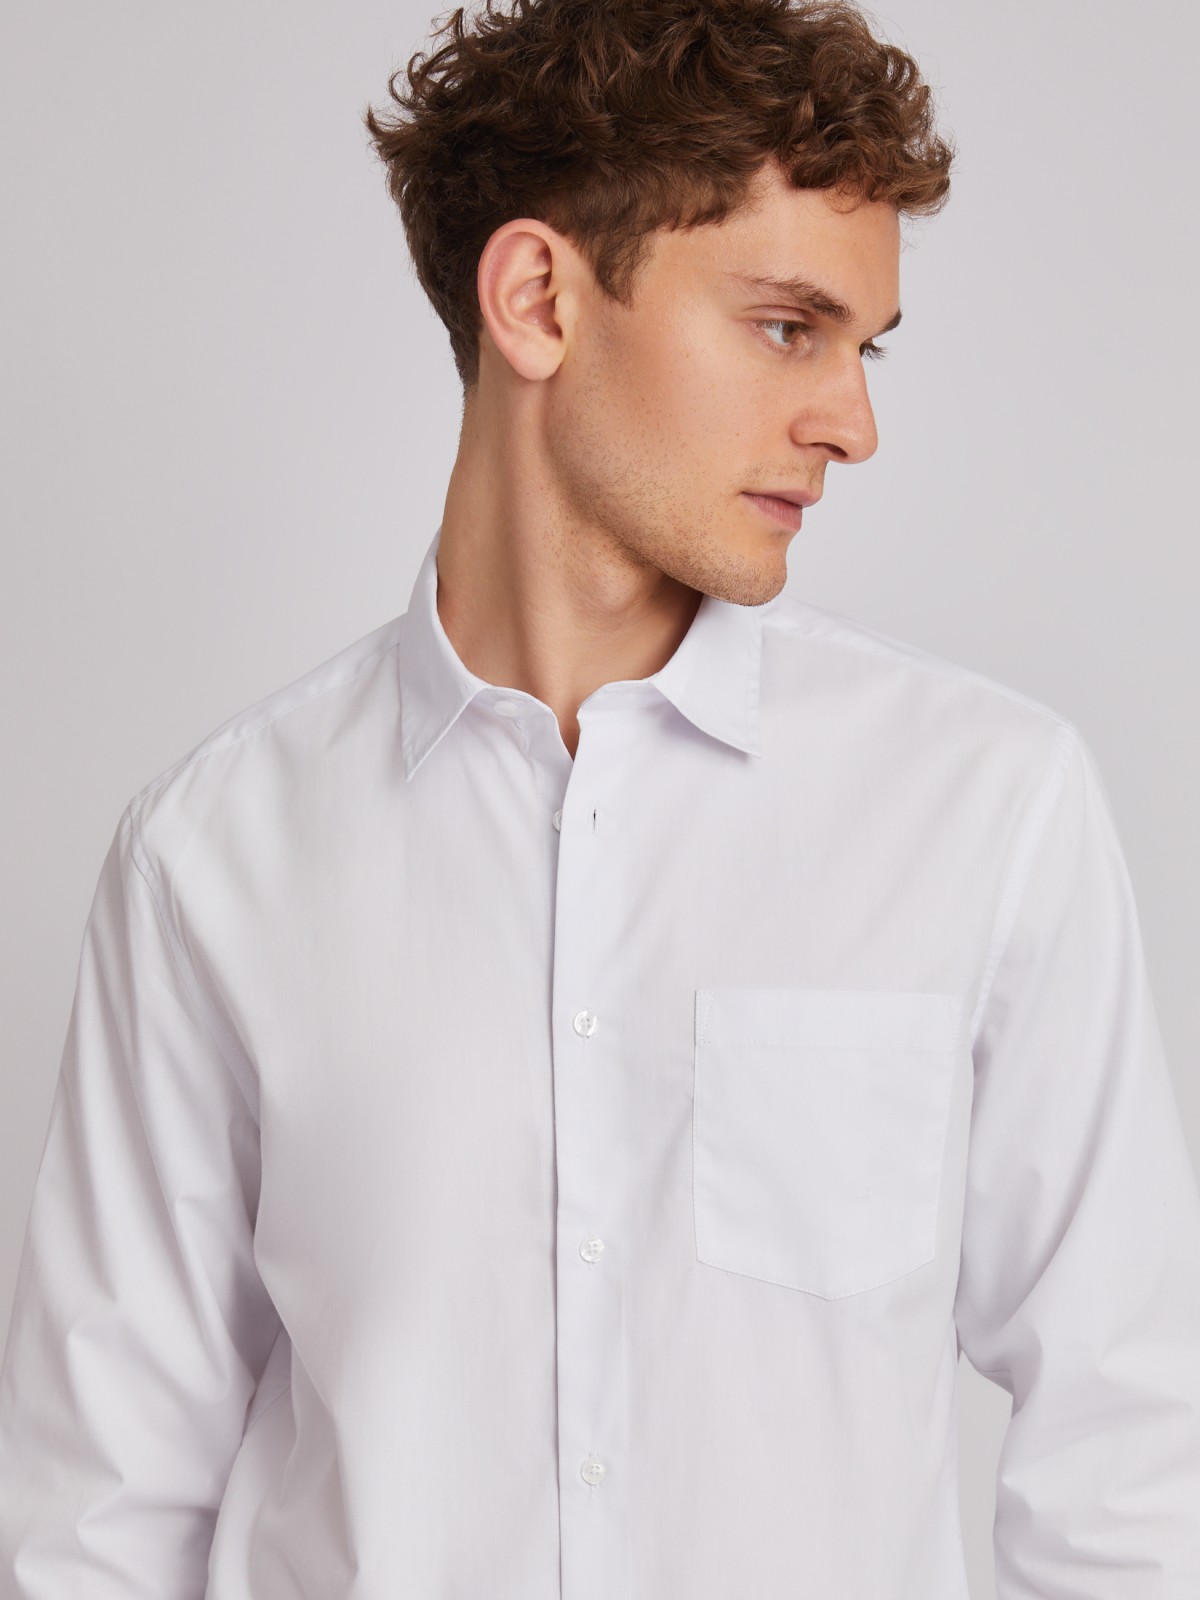 Офисная рубашка прямого силуэта с длинным рукавом zolla 01332217Y012, цвет белый, размер XS - фото 4